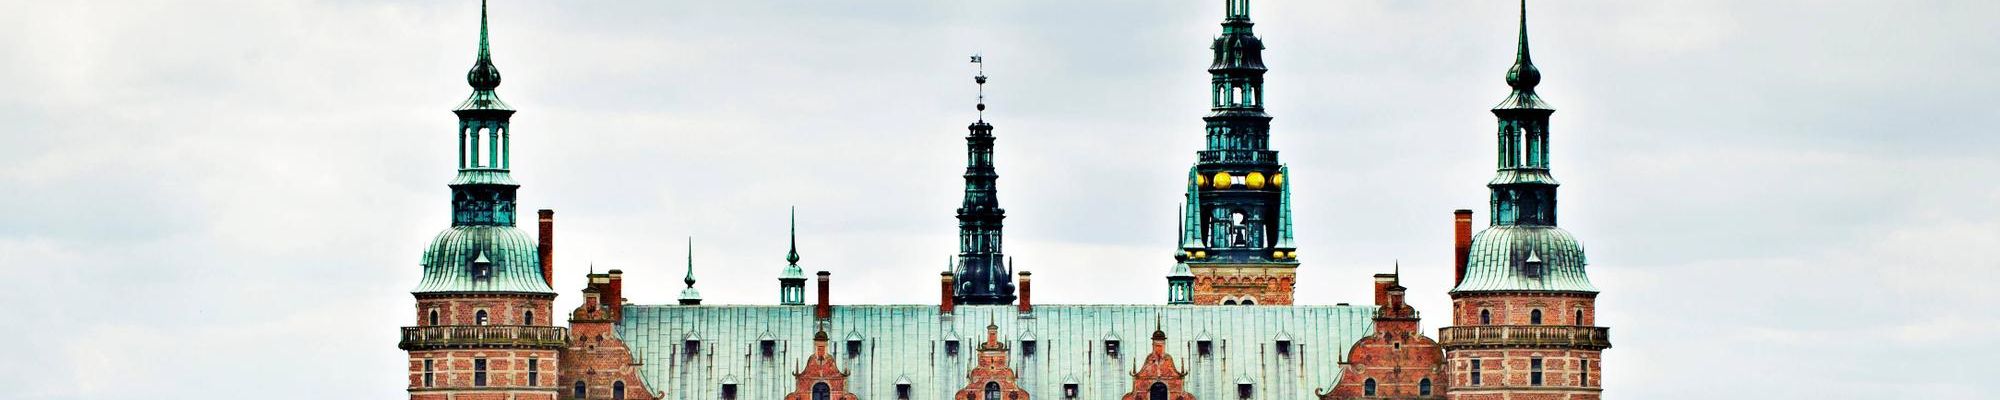 Det Nationalhistoriske Museum på Frederiksborg Slot